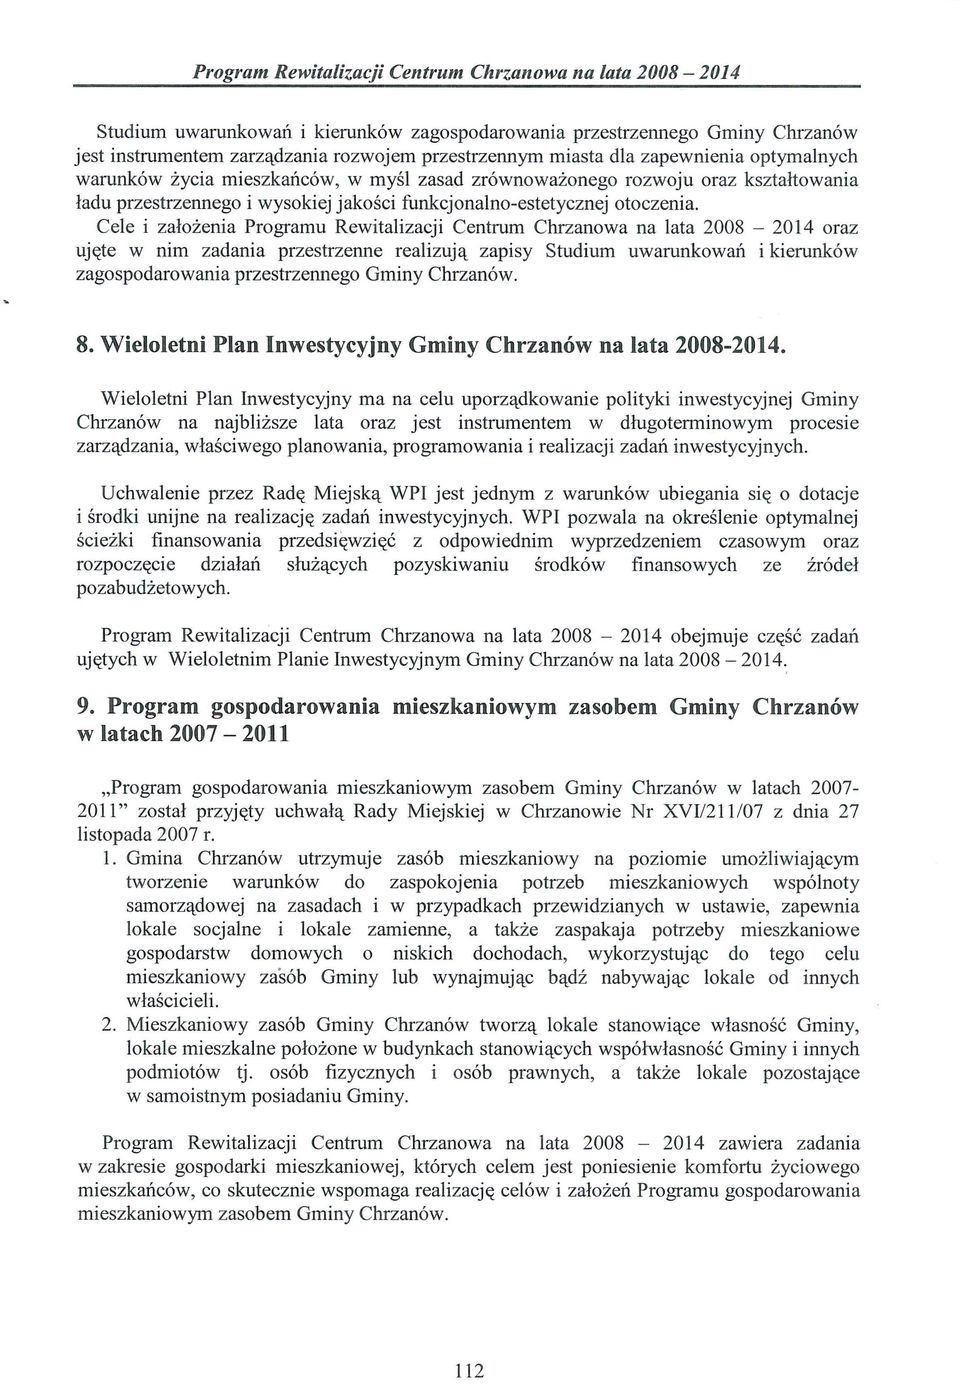 Cele i założenia Programu Rewitalizacji Centrum Chrzanowa na lata 2008-2014 oraz ujęte w nim zadania przestrzenne realizują zapisy Studium uwarunkowań i kierunków zagospodarowania przestrzennego